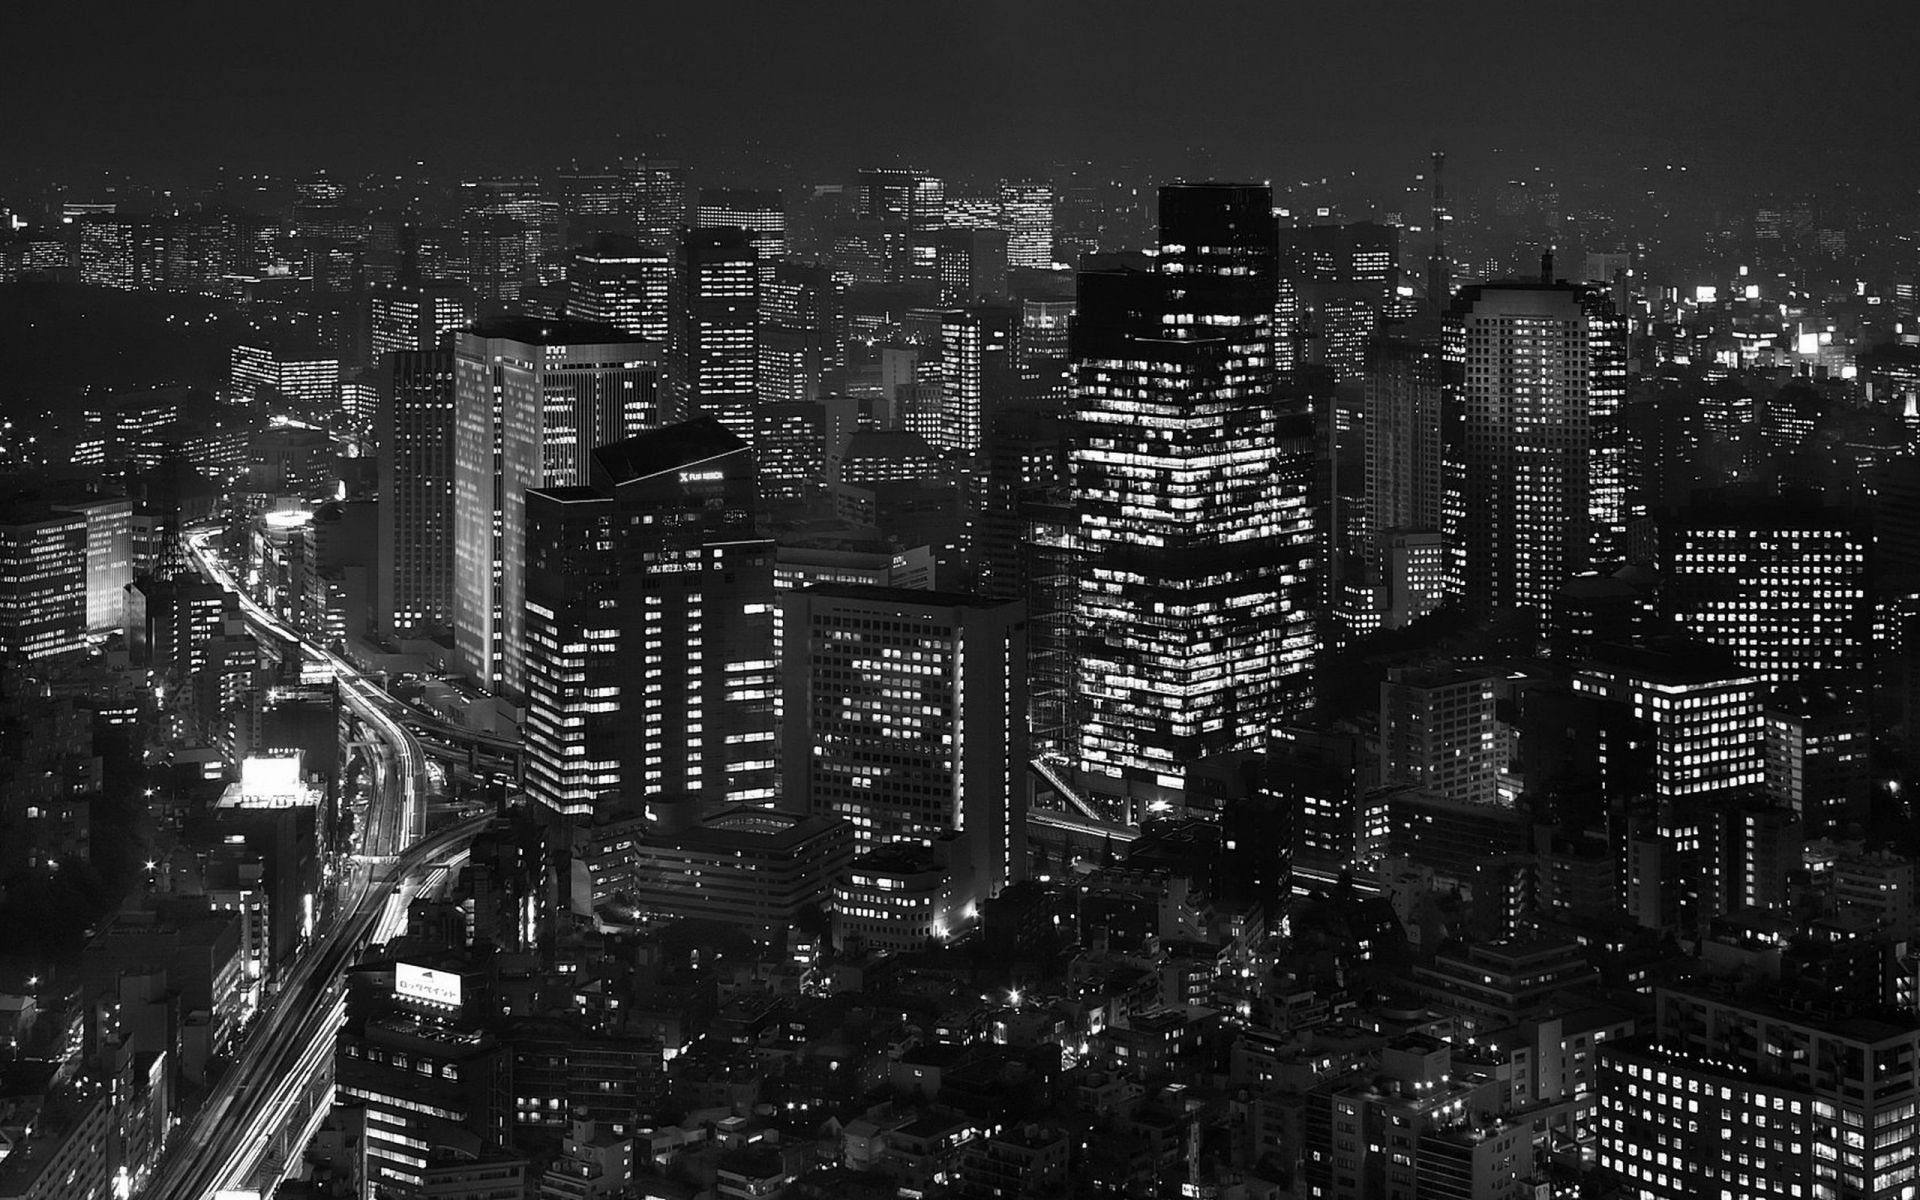 Hãy nhấp chuột vào hình nền Tokyo đen trắng để cảm nhận vẻ đẹp hoàn hảo của thủ đô Nhật Bản. Những tòa nhà cao chọc trời, những tuyến đường phố sáng lấp lánh và những công trình kiến trúc độc đáo, tất cả đều được tái hiện tinh tế trên hình nền này.